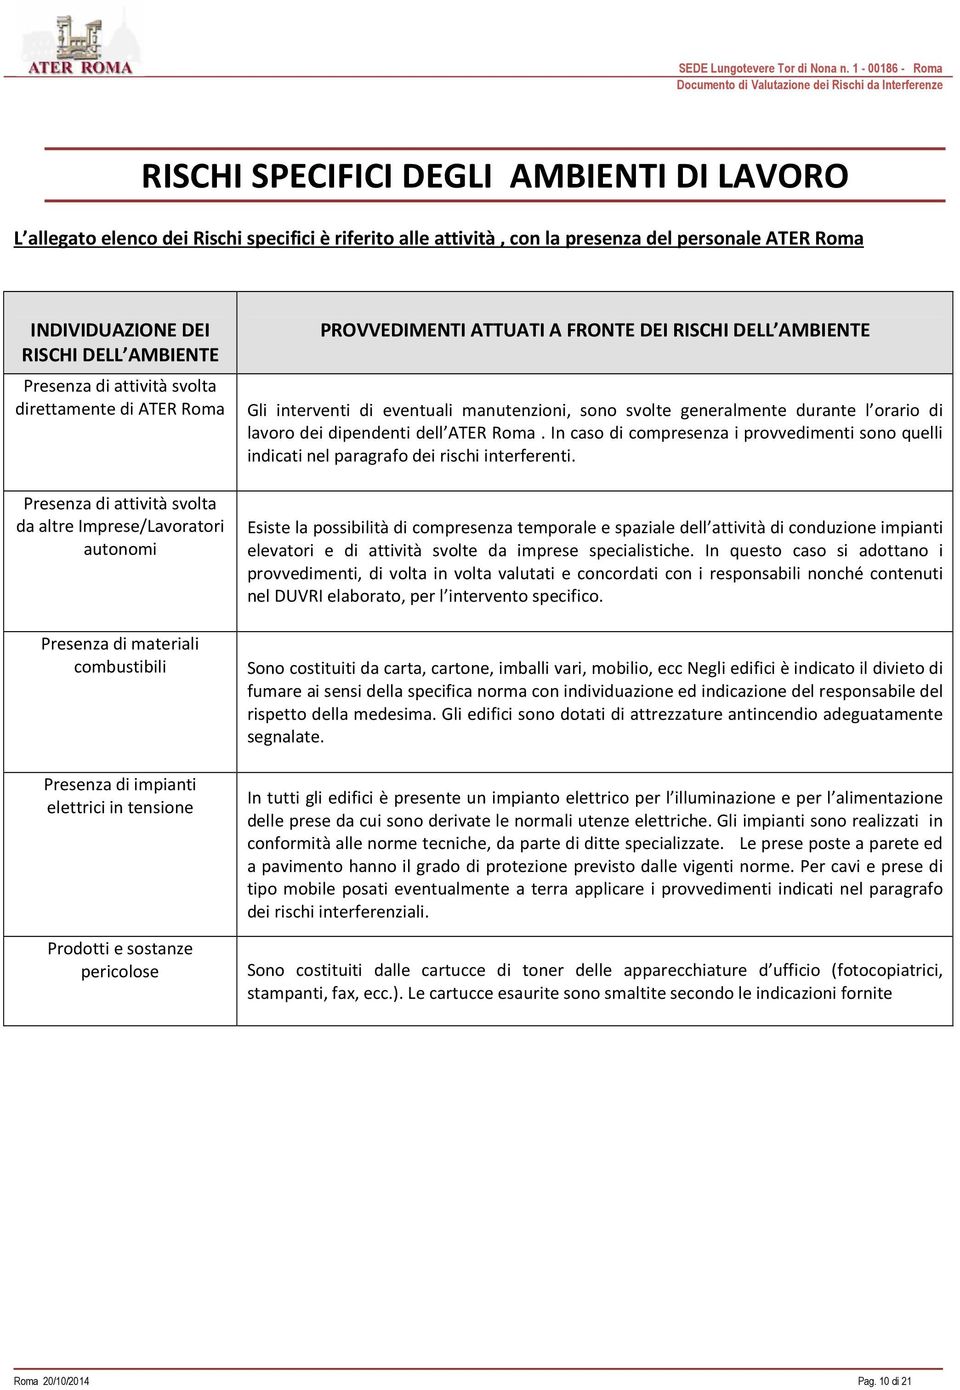 lavoro dei dipendenti dell ATER Roma. In caso di compresenza i provvedimenti sono quelli indicati nel paragrafo dei rischi interferenti.